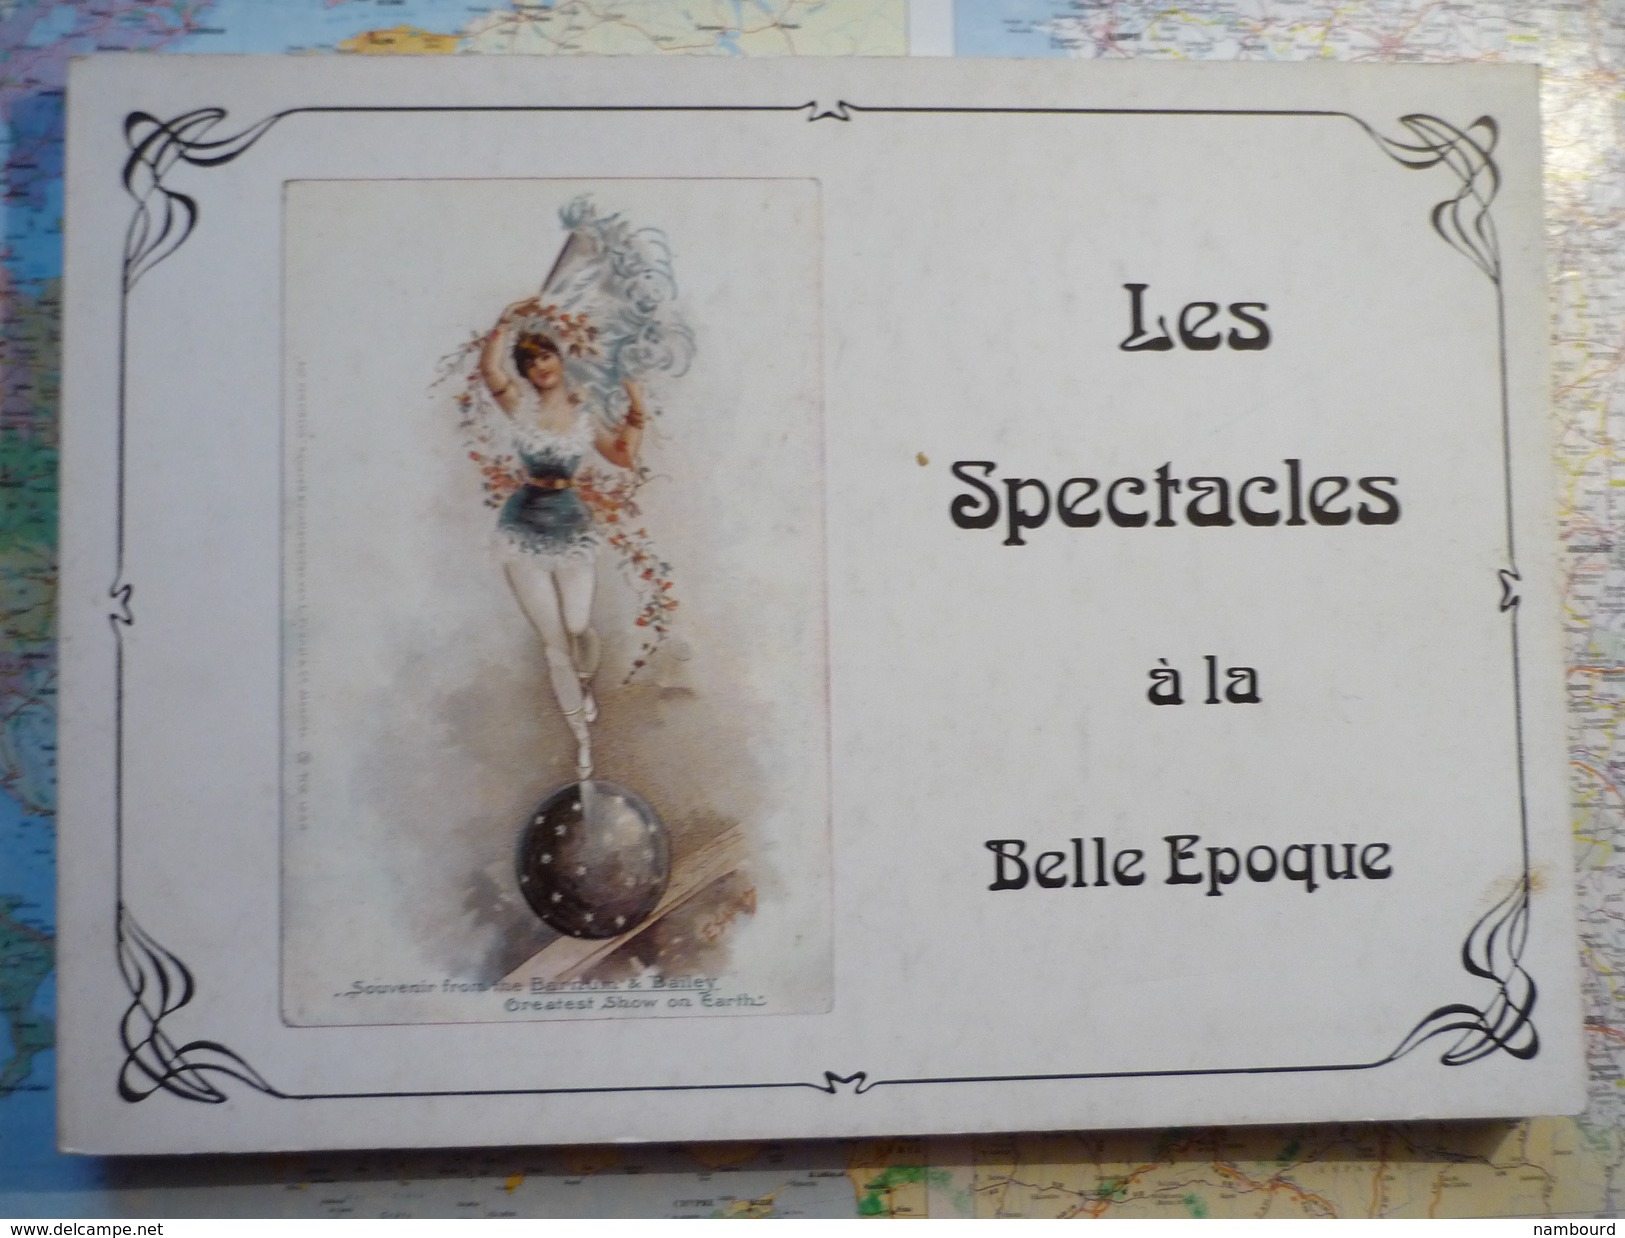 Les Spectacles La Rue La Foire Le Cirque à La Belle Epoque Par Claude Dohet SPRL SODIM Bruxelles1976 - Livres & Catalogues